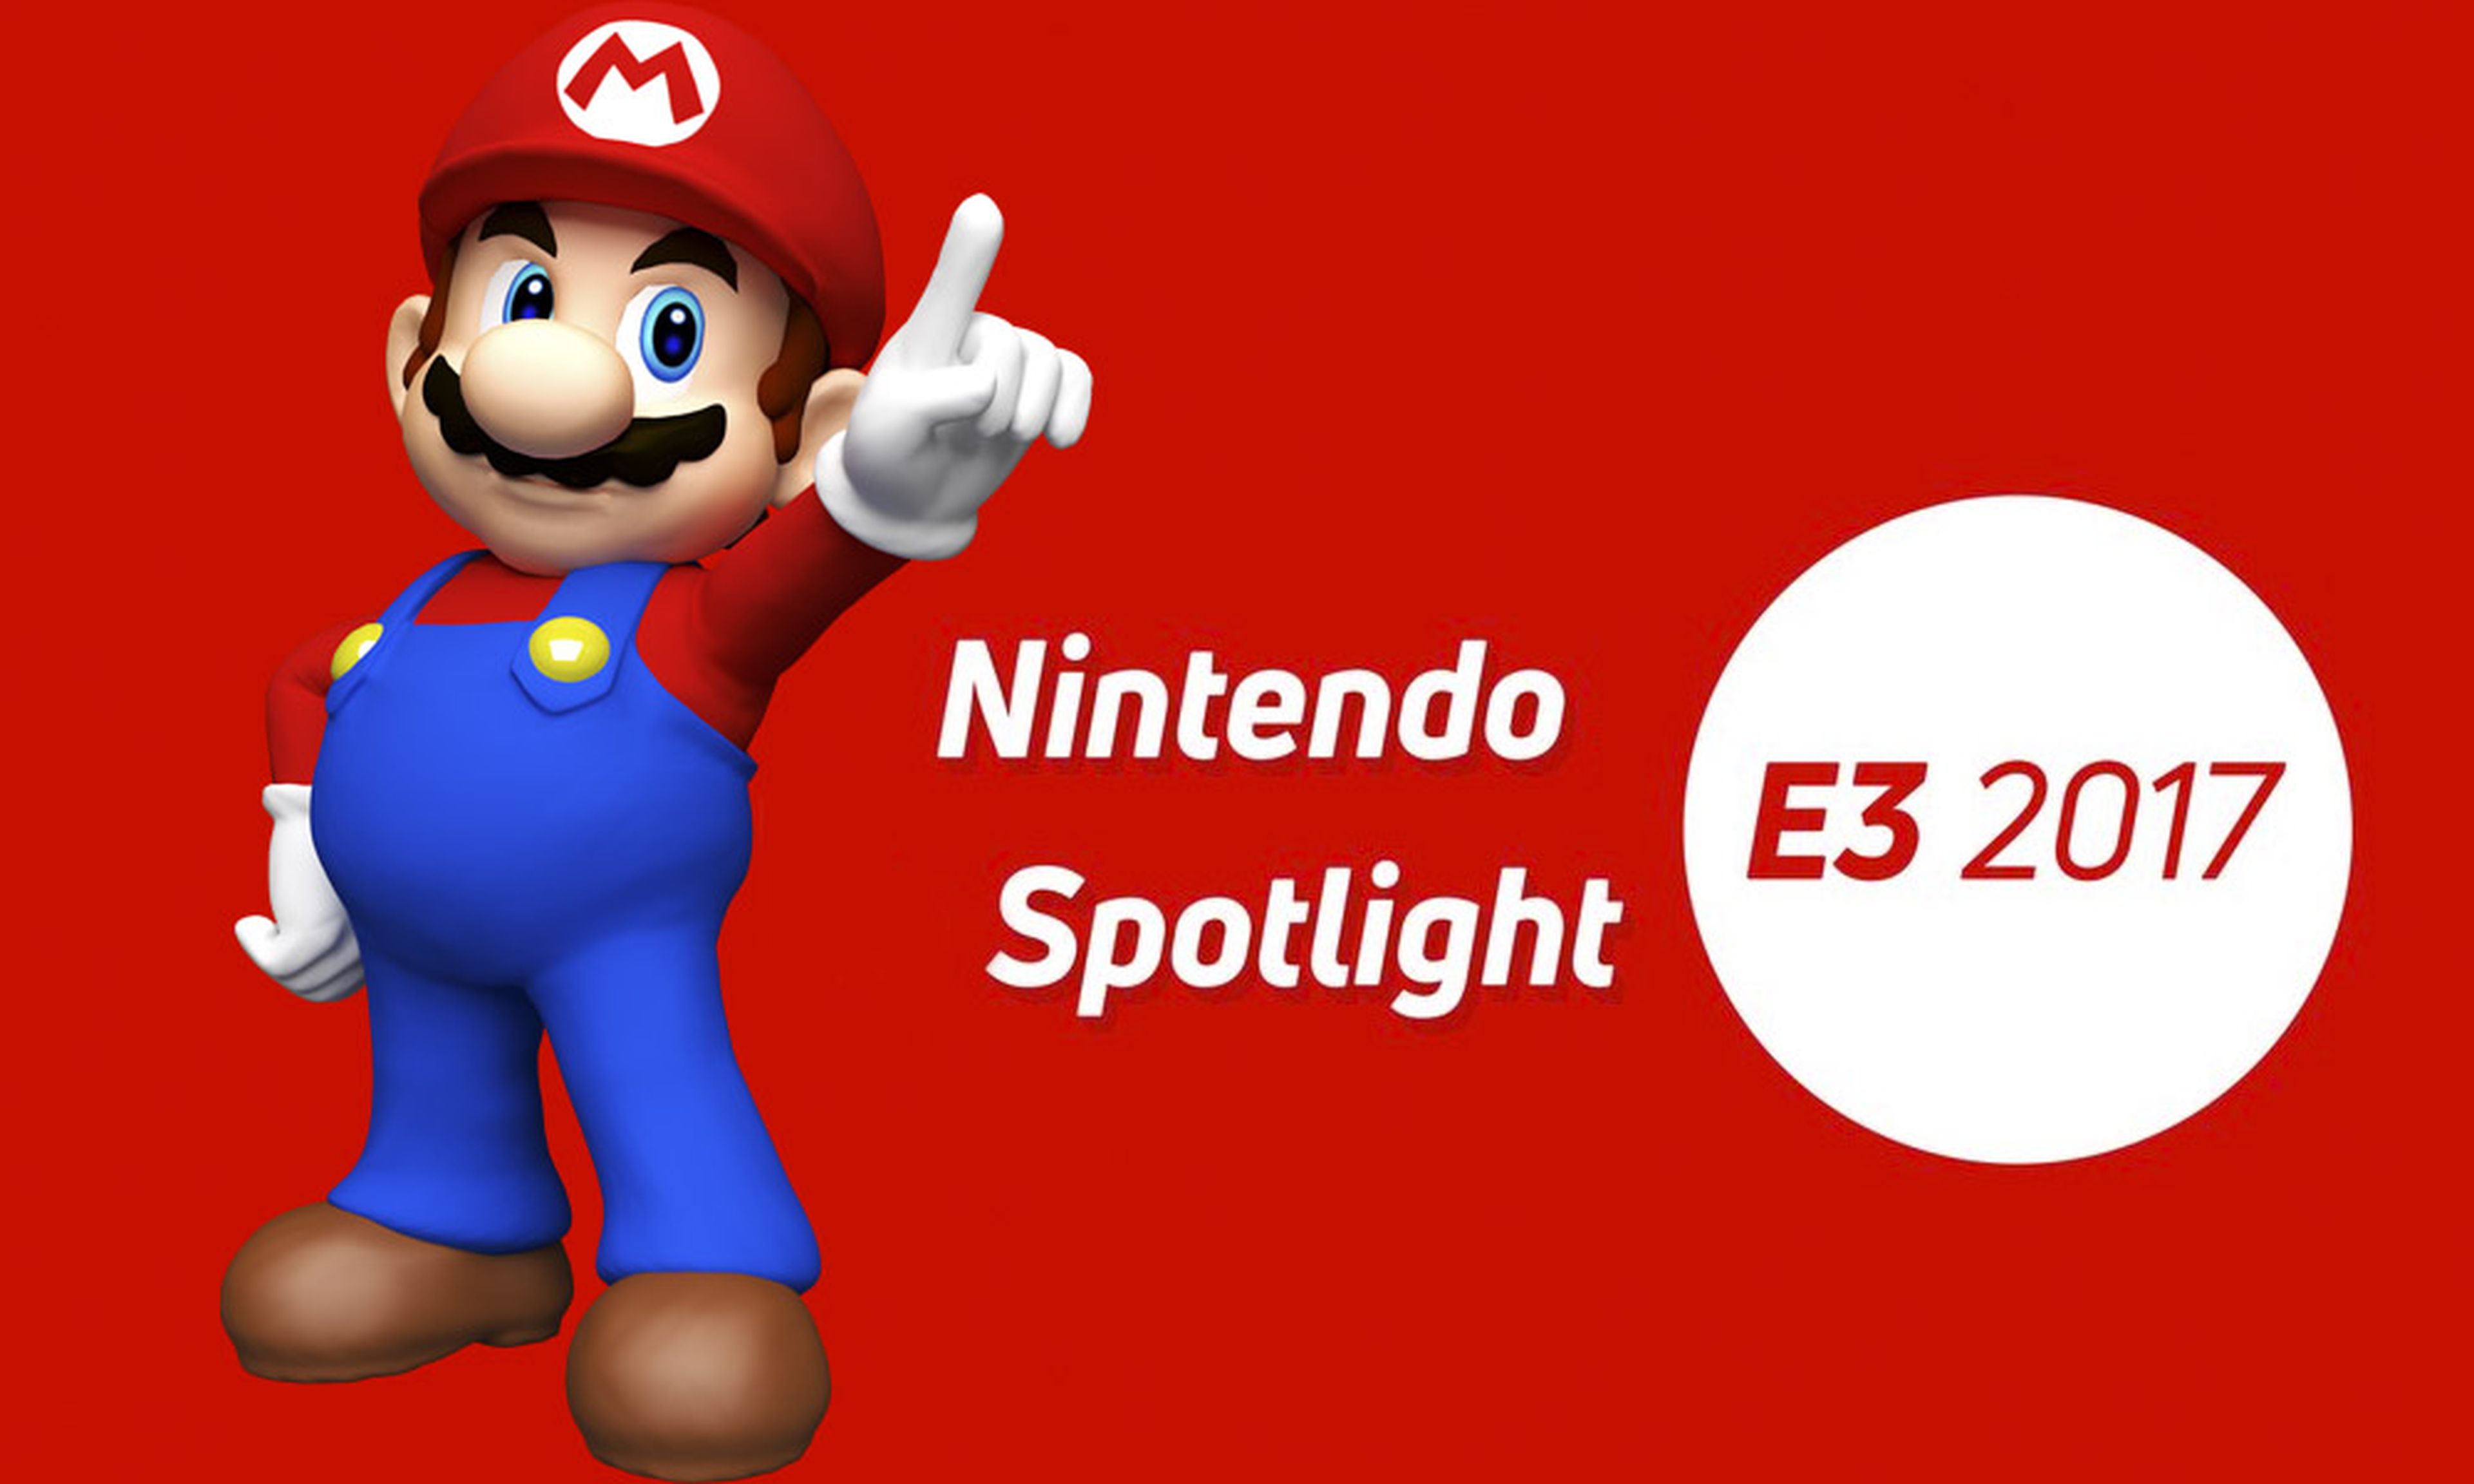 Nintendo Spotlight